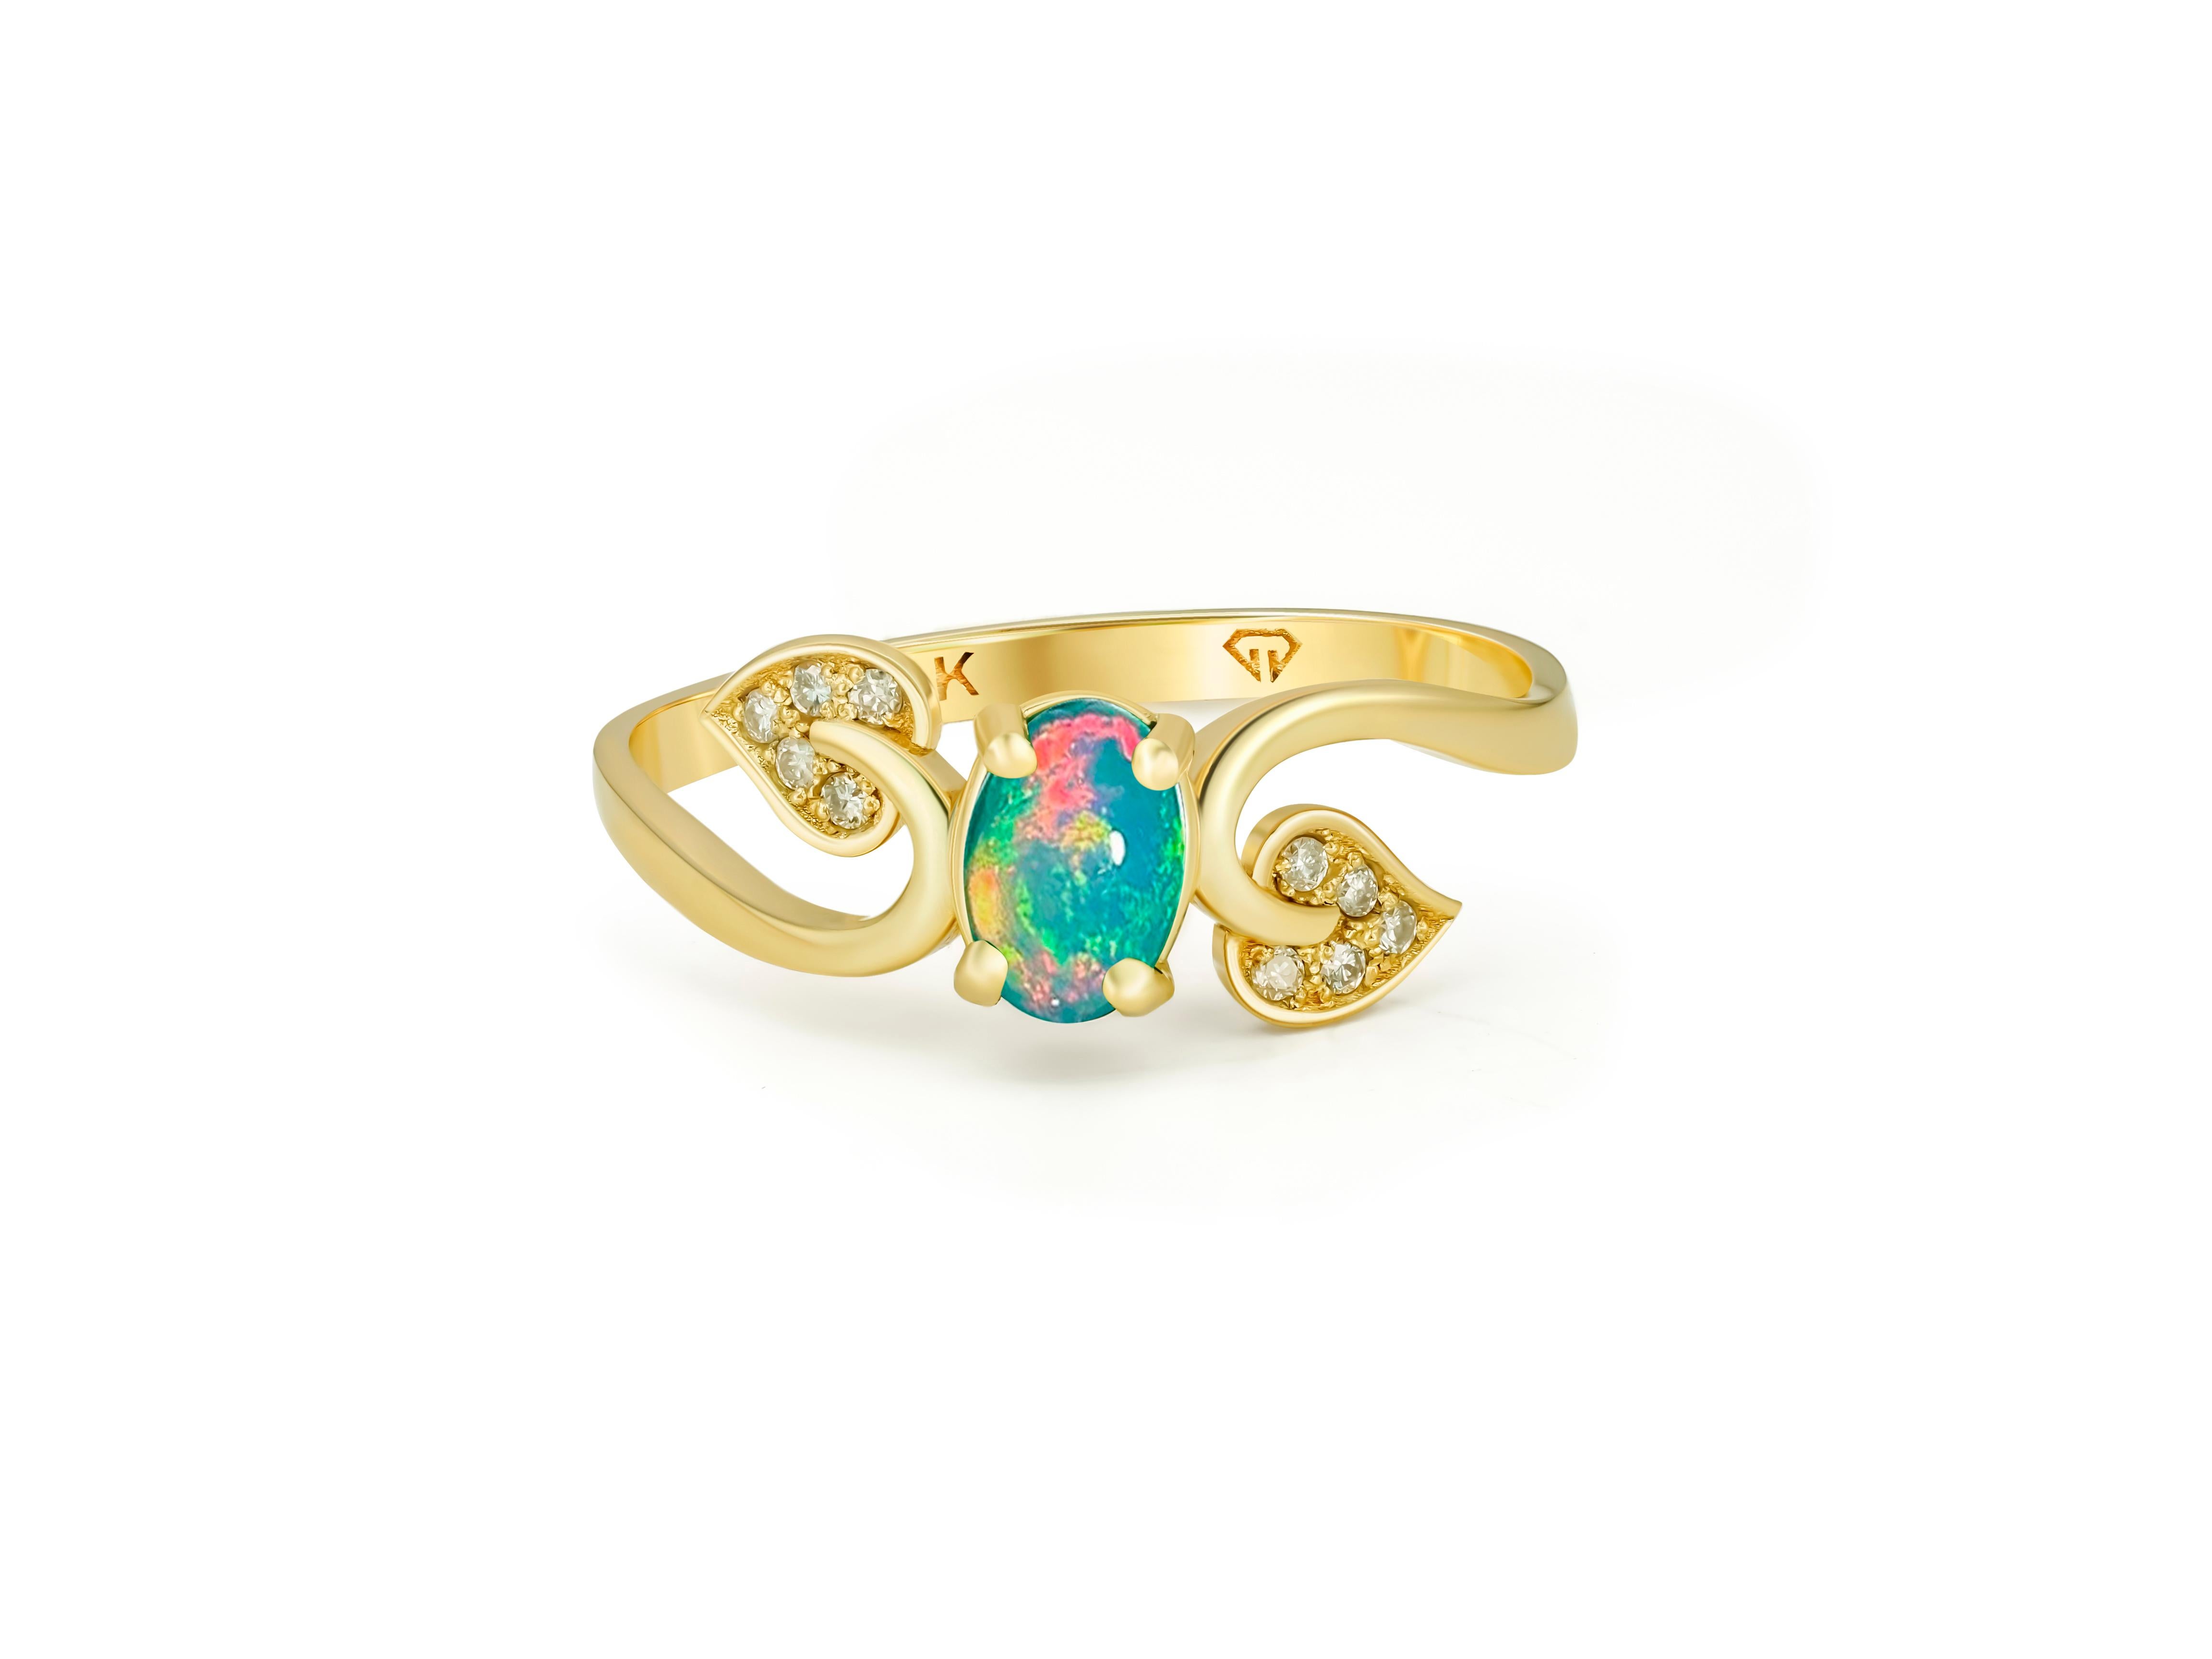 Goldblätter Ring mit Opal. 
Opal-Verlobungsring. Opal 14k Gold Ring. Opal Vintage Ring. Ring mit Geburtsstein für Oktober. Ovaler Opal-Ring.

Metall: 14kt Massivgold
Gesamtgewicht: 1.8 g (abhängig von der Größe).

Zentraler Edelstein: Natürlicher